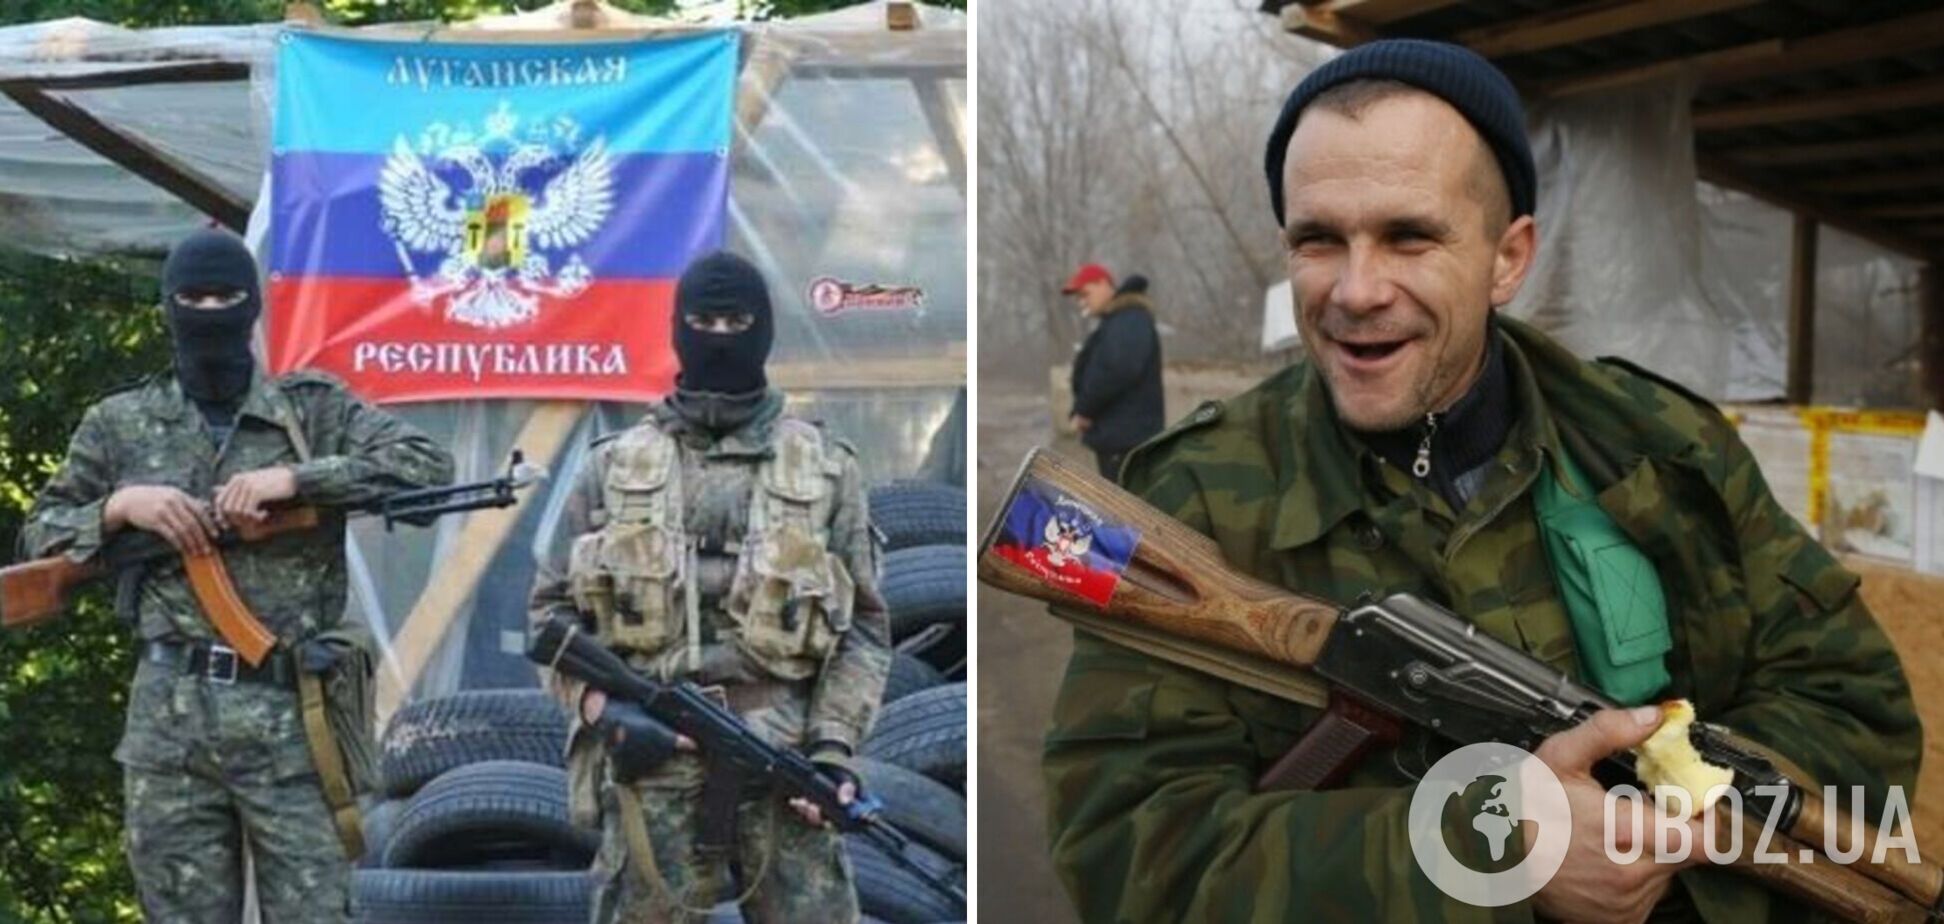 Оккупанты решили переименовать Луганск в Ворошиловград, но временно